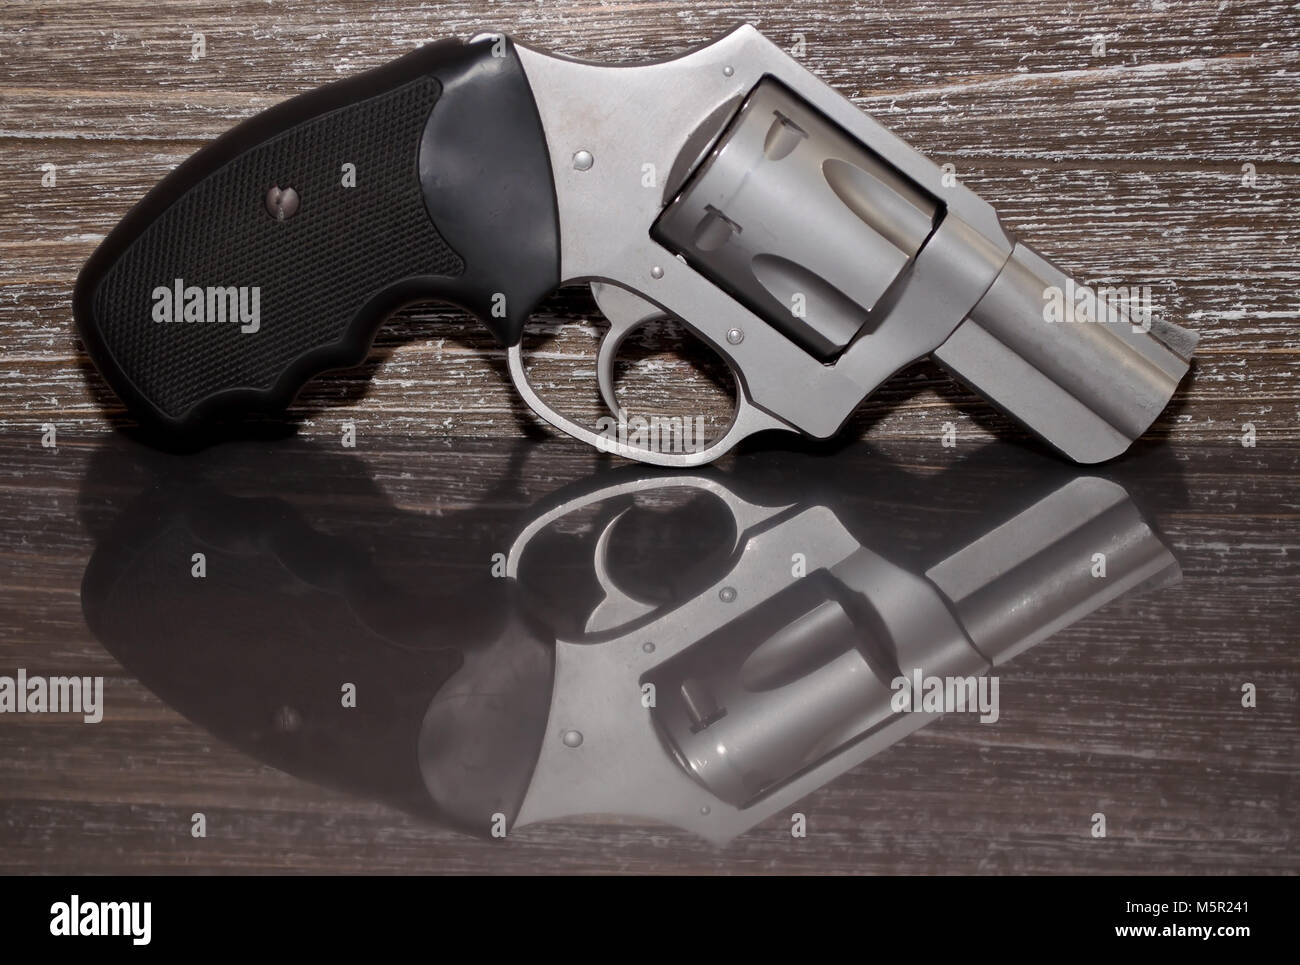 Un acciaio inossidabile .357 revolver Magnum su una superficie riflettente con un background in legno Foto Stock